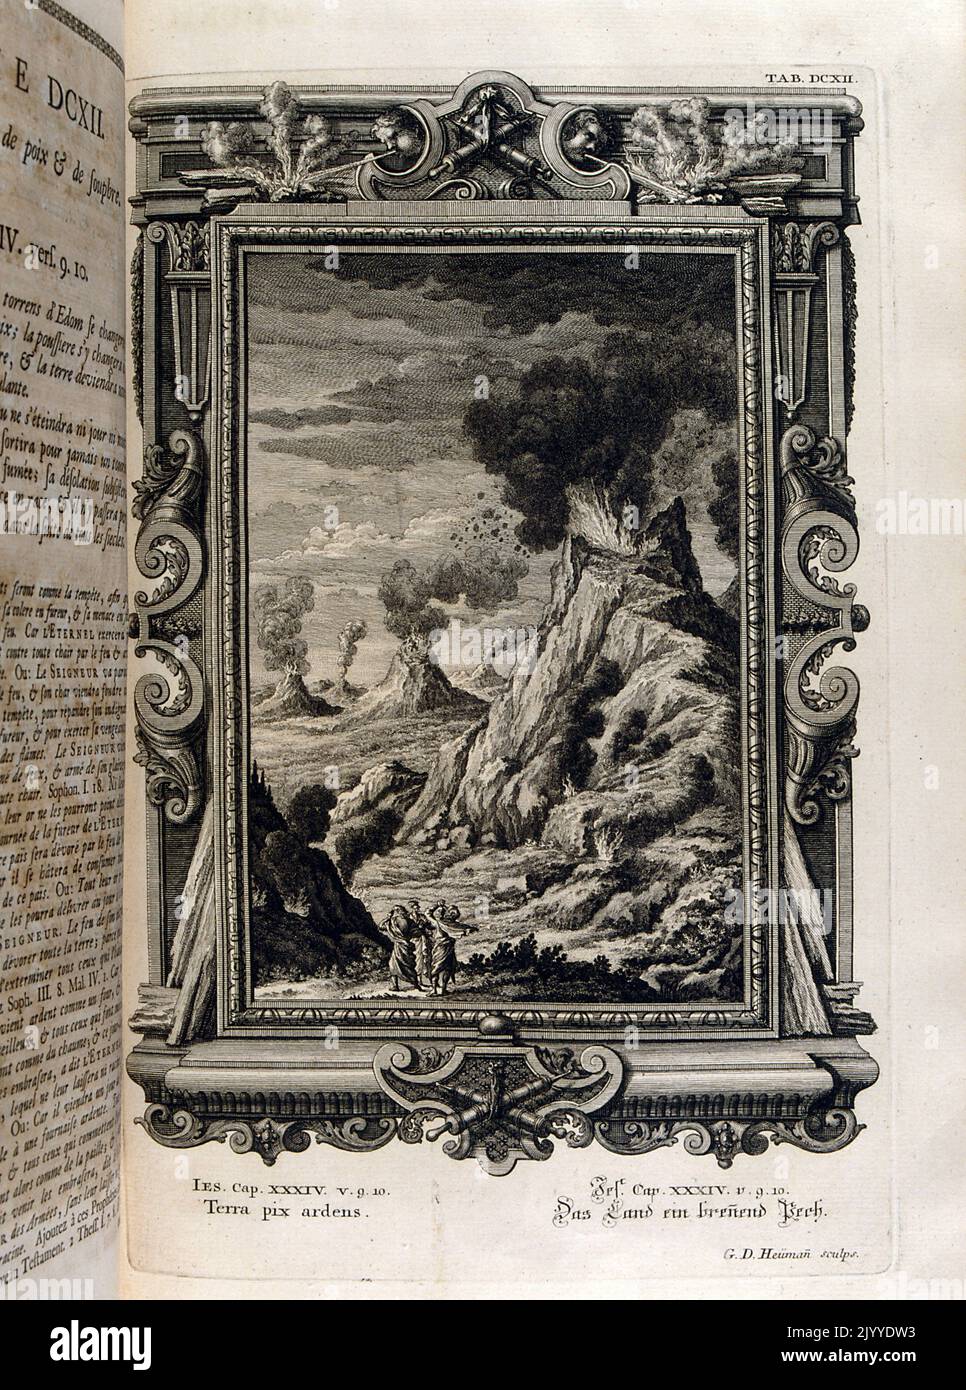 Incisione raffigurante una scena di montagne rocciose e vulcani esplosi. L'illustrazione è impostata all'interno di una cornice ornata. Foto Stock